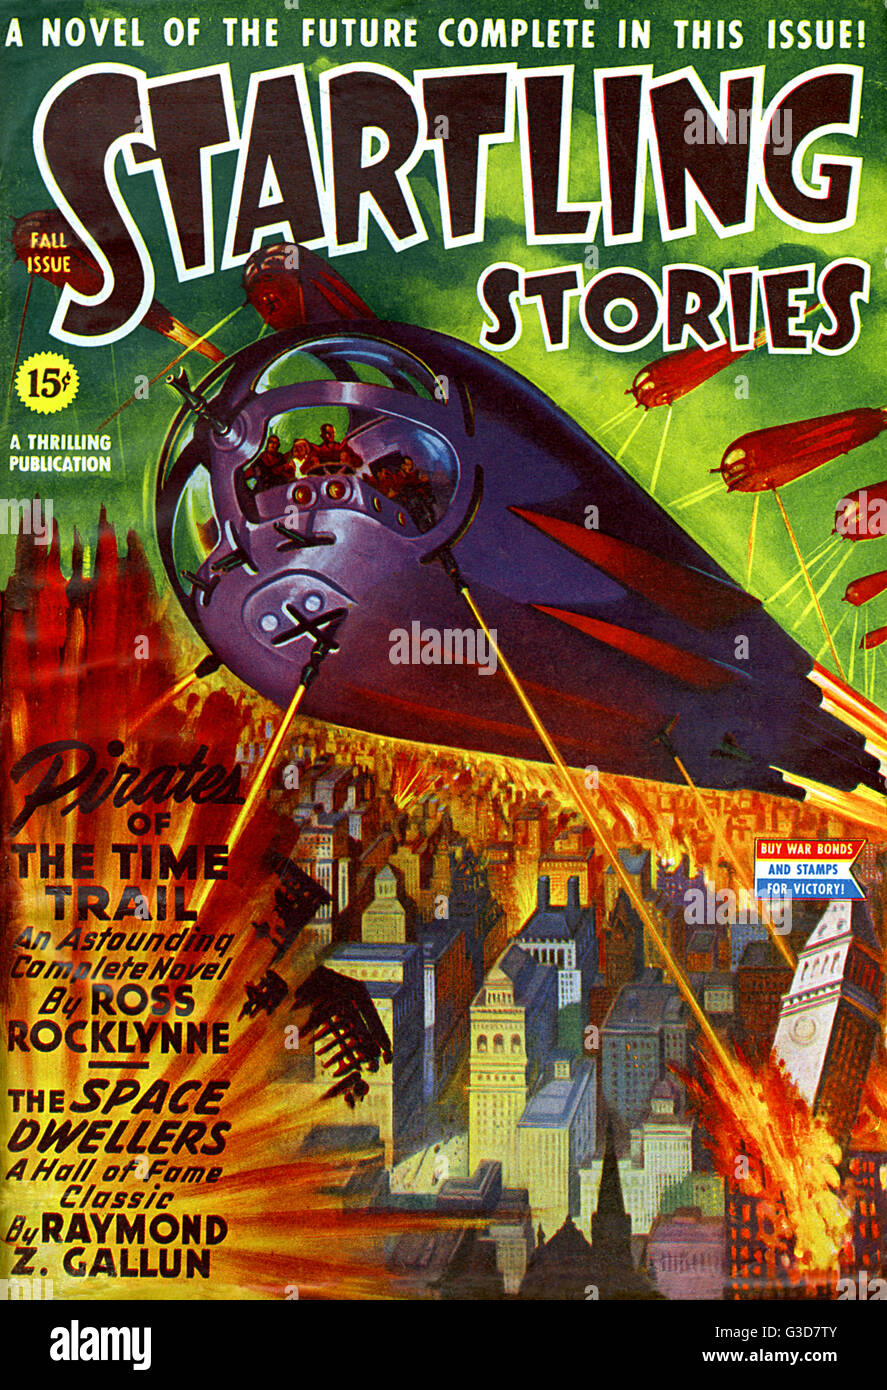 Erstaunliche Geschichten - Sci Fi Mag - Piraten der Zeit Stockfoto